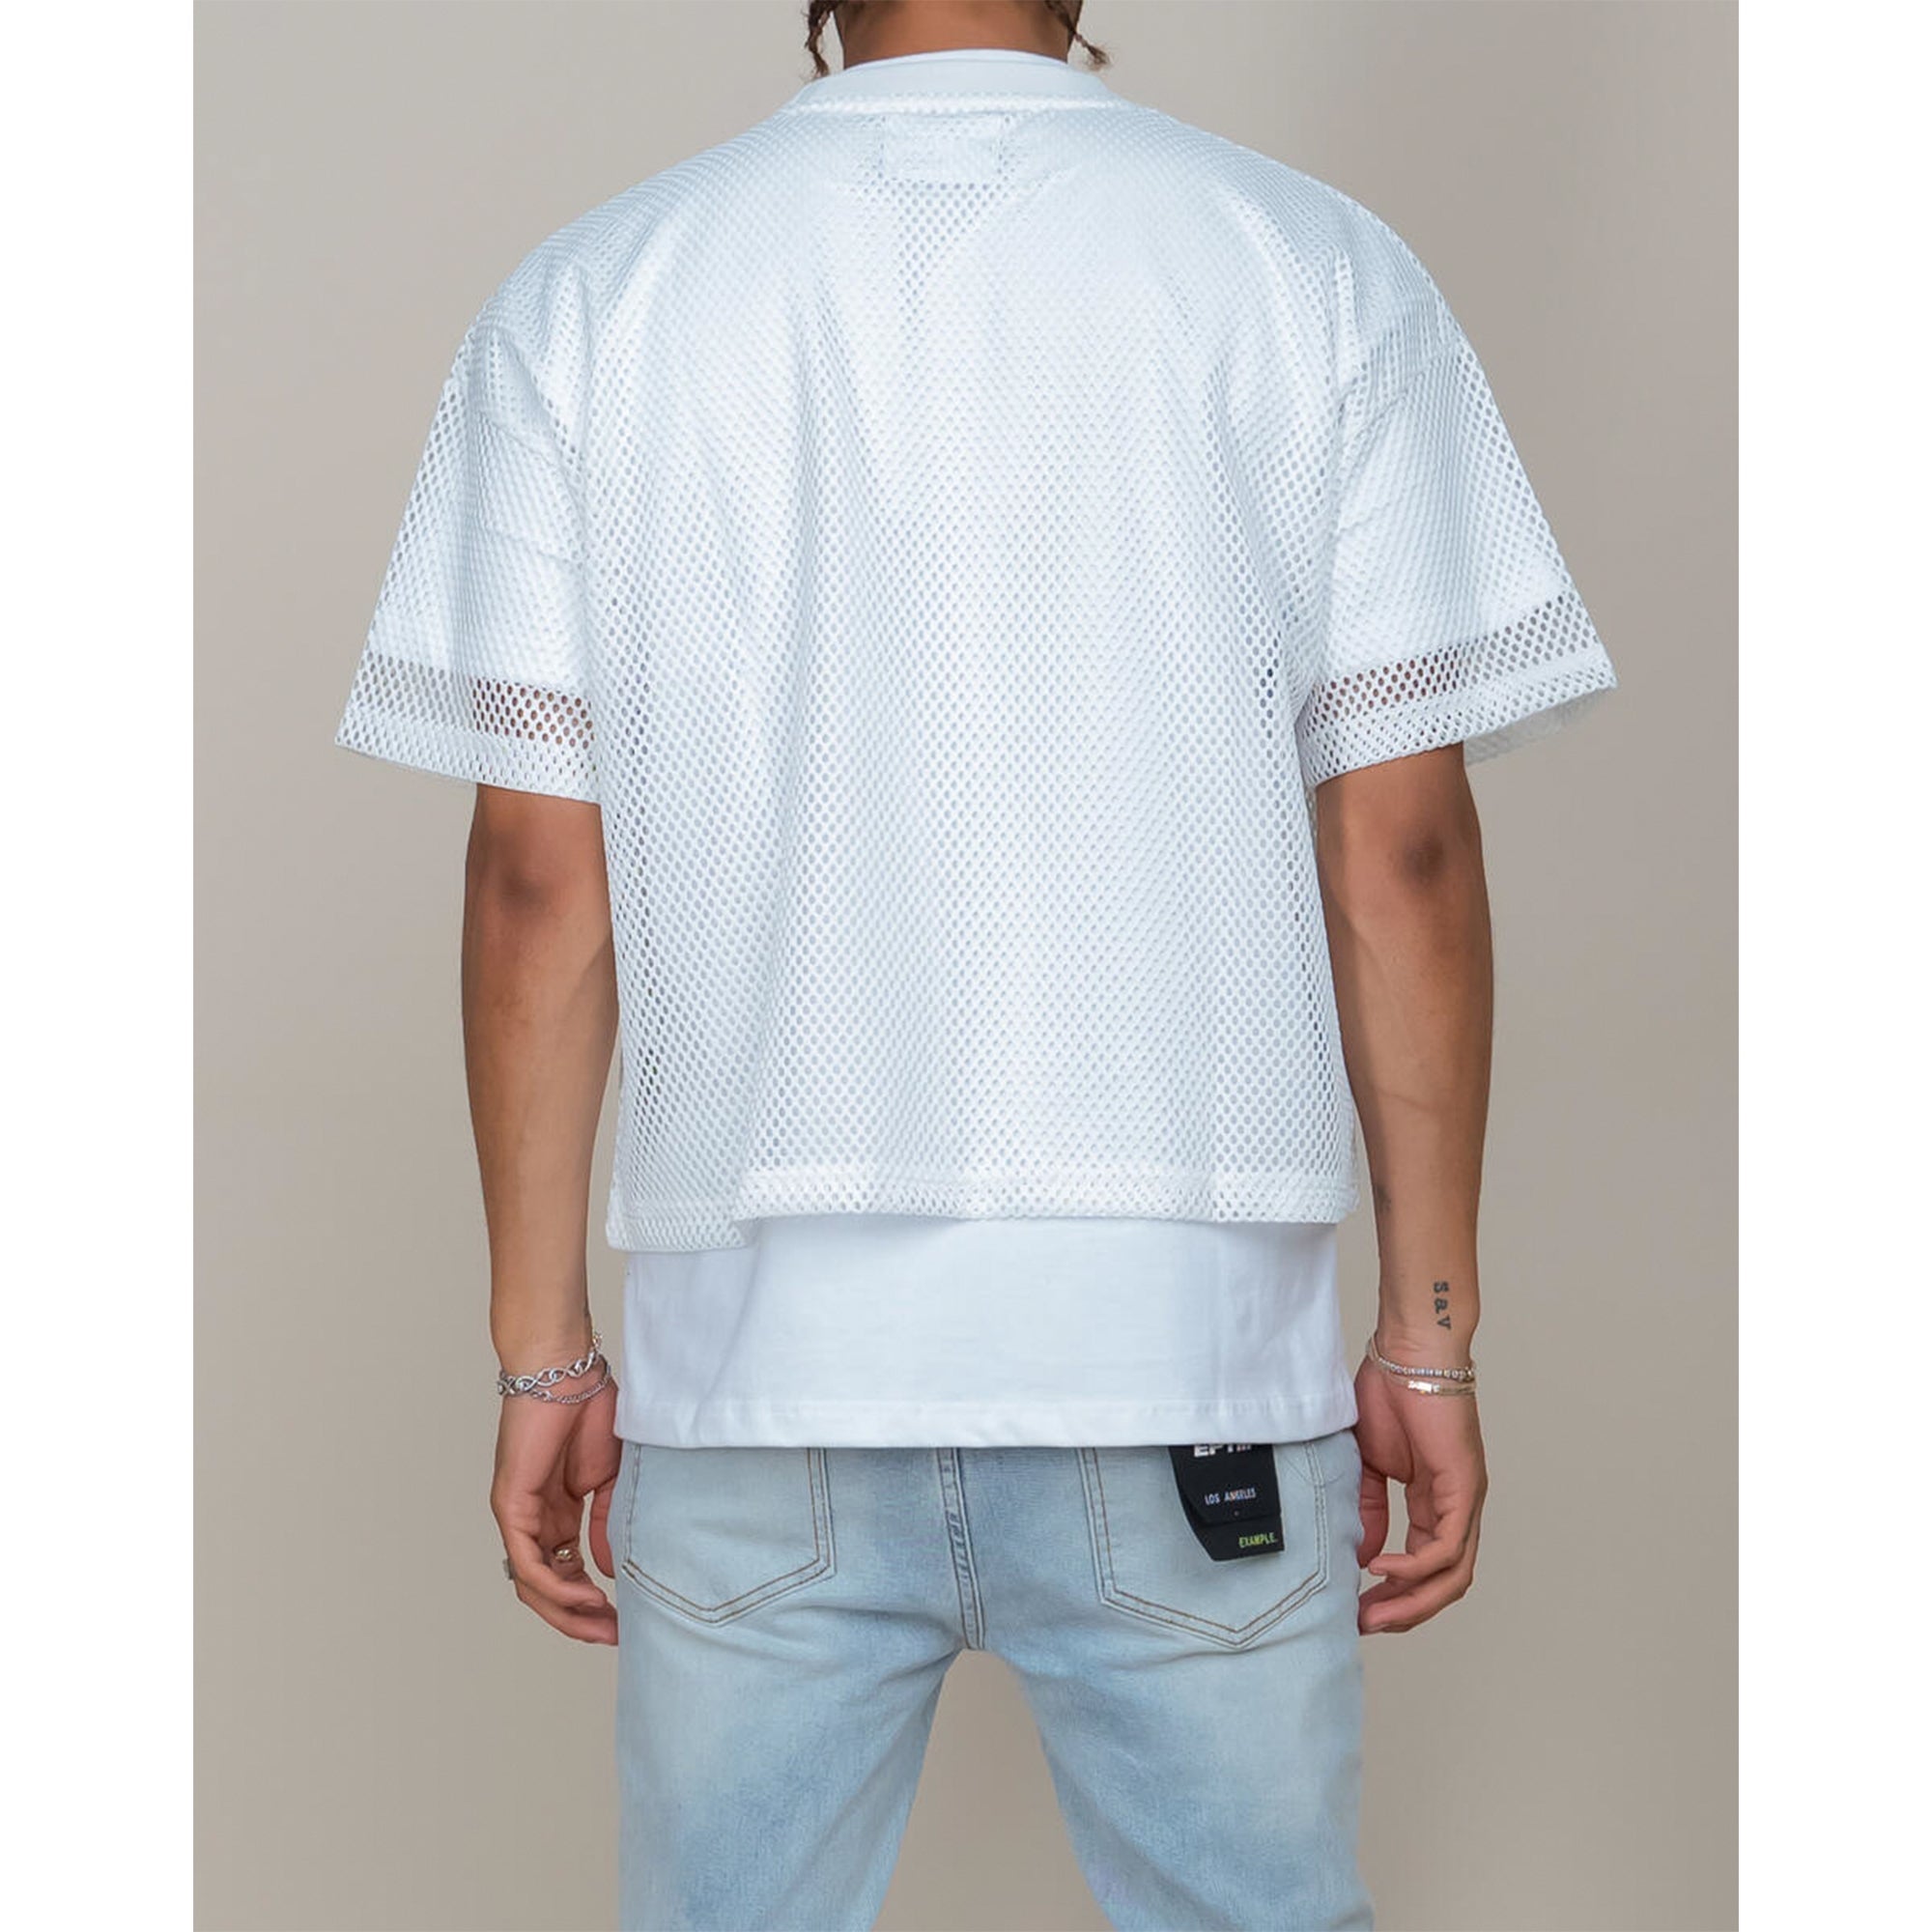 EPTM Unisex Stadium Jersey (White)-Nexus Clothing